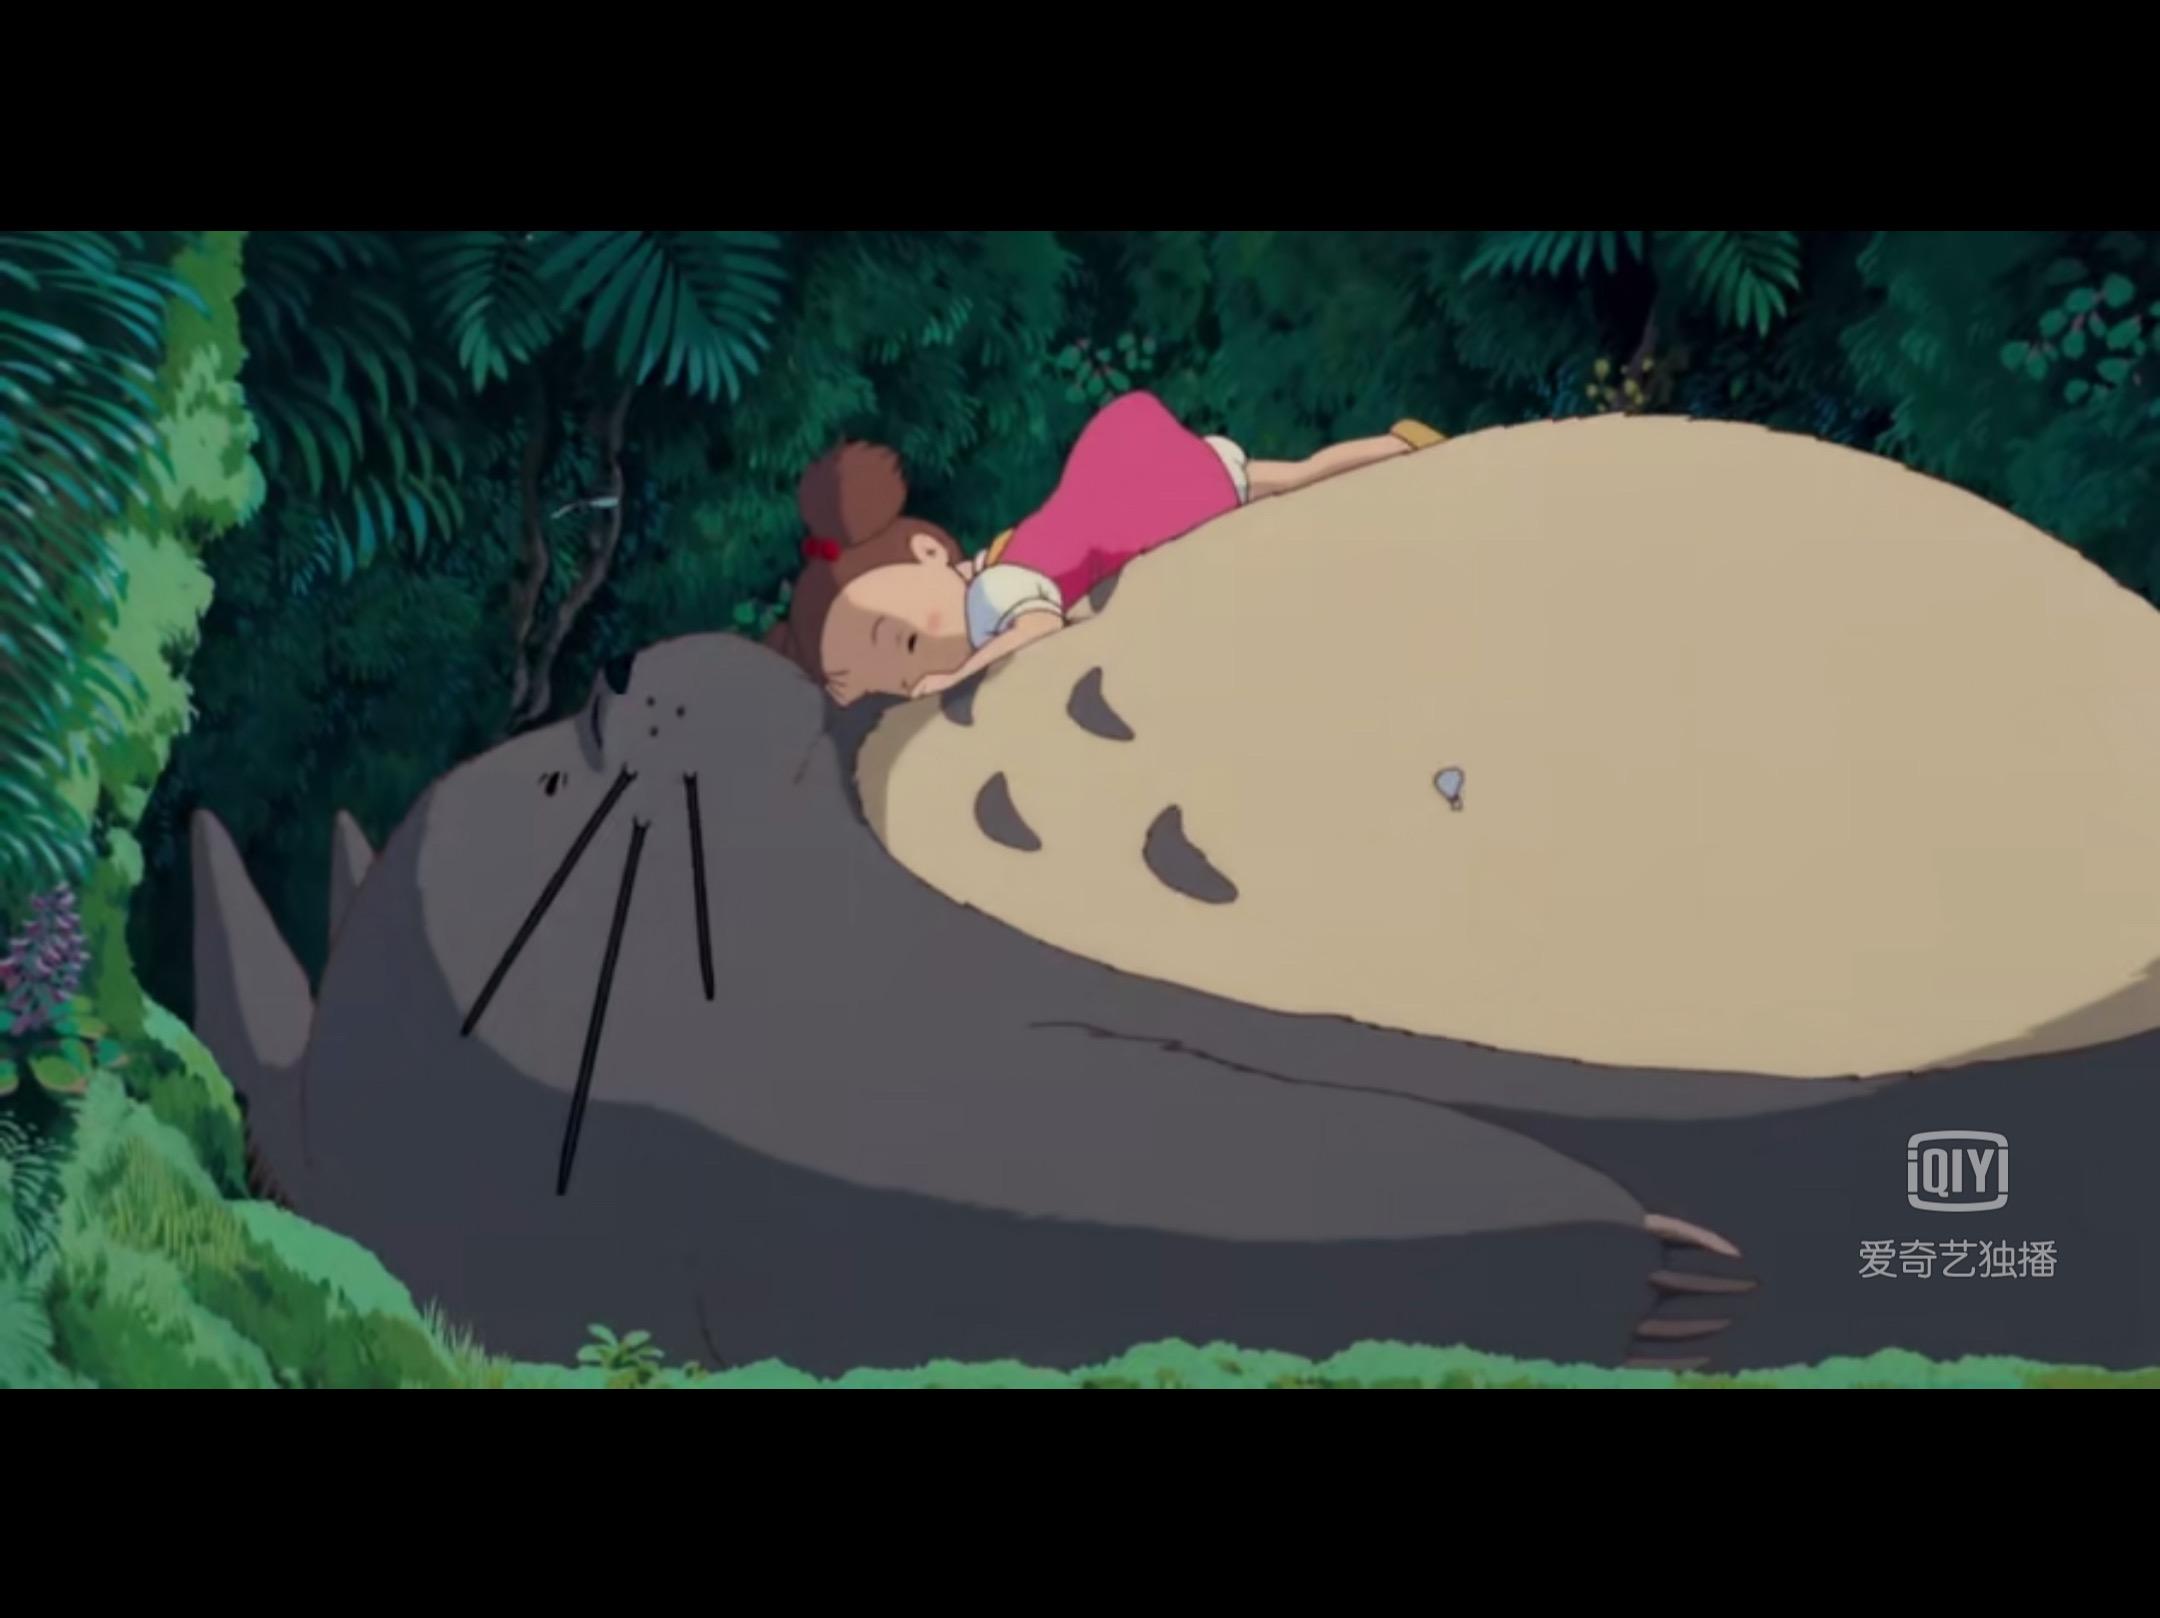 如何评价宫崎骏的动画《龙猫》? 